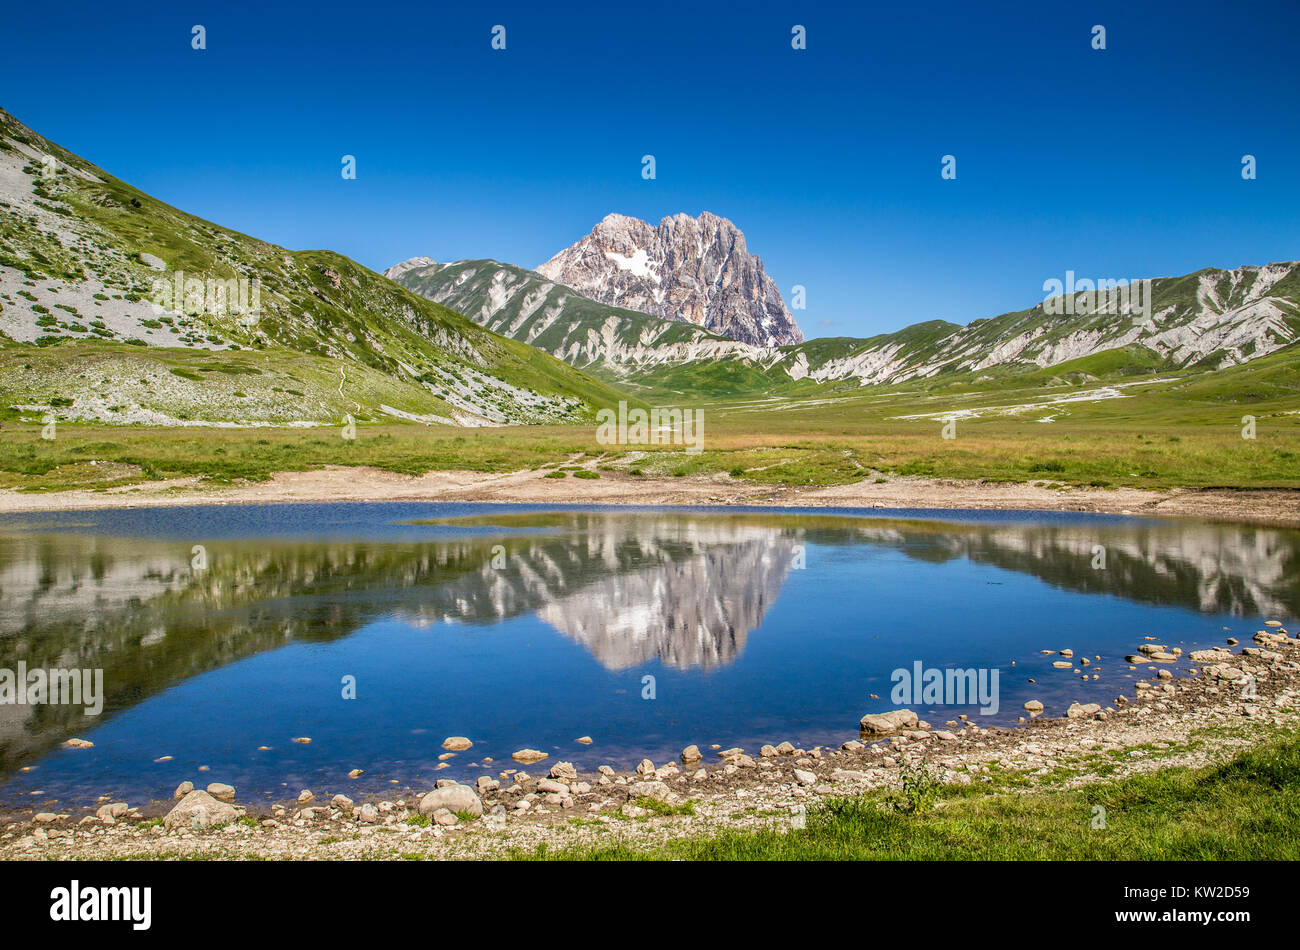 Wunderschöne Landschaft mit Gran Sasso d ' Italia Höhepunkt im Campo Imperatore Plateau in den Apennin, Abruzzen, Italien Stockfoto